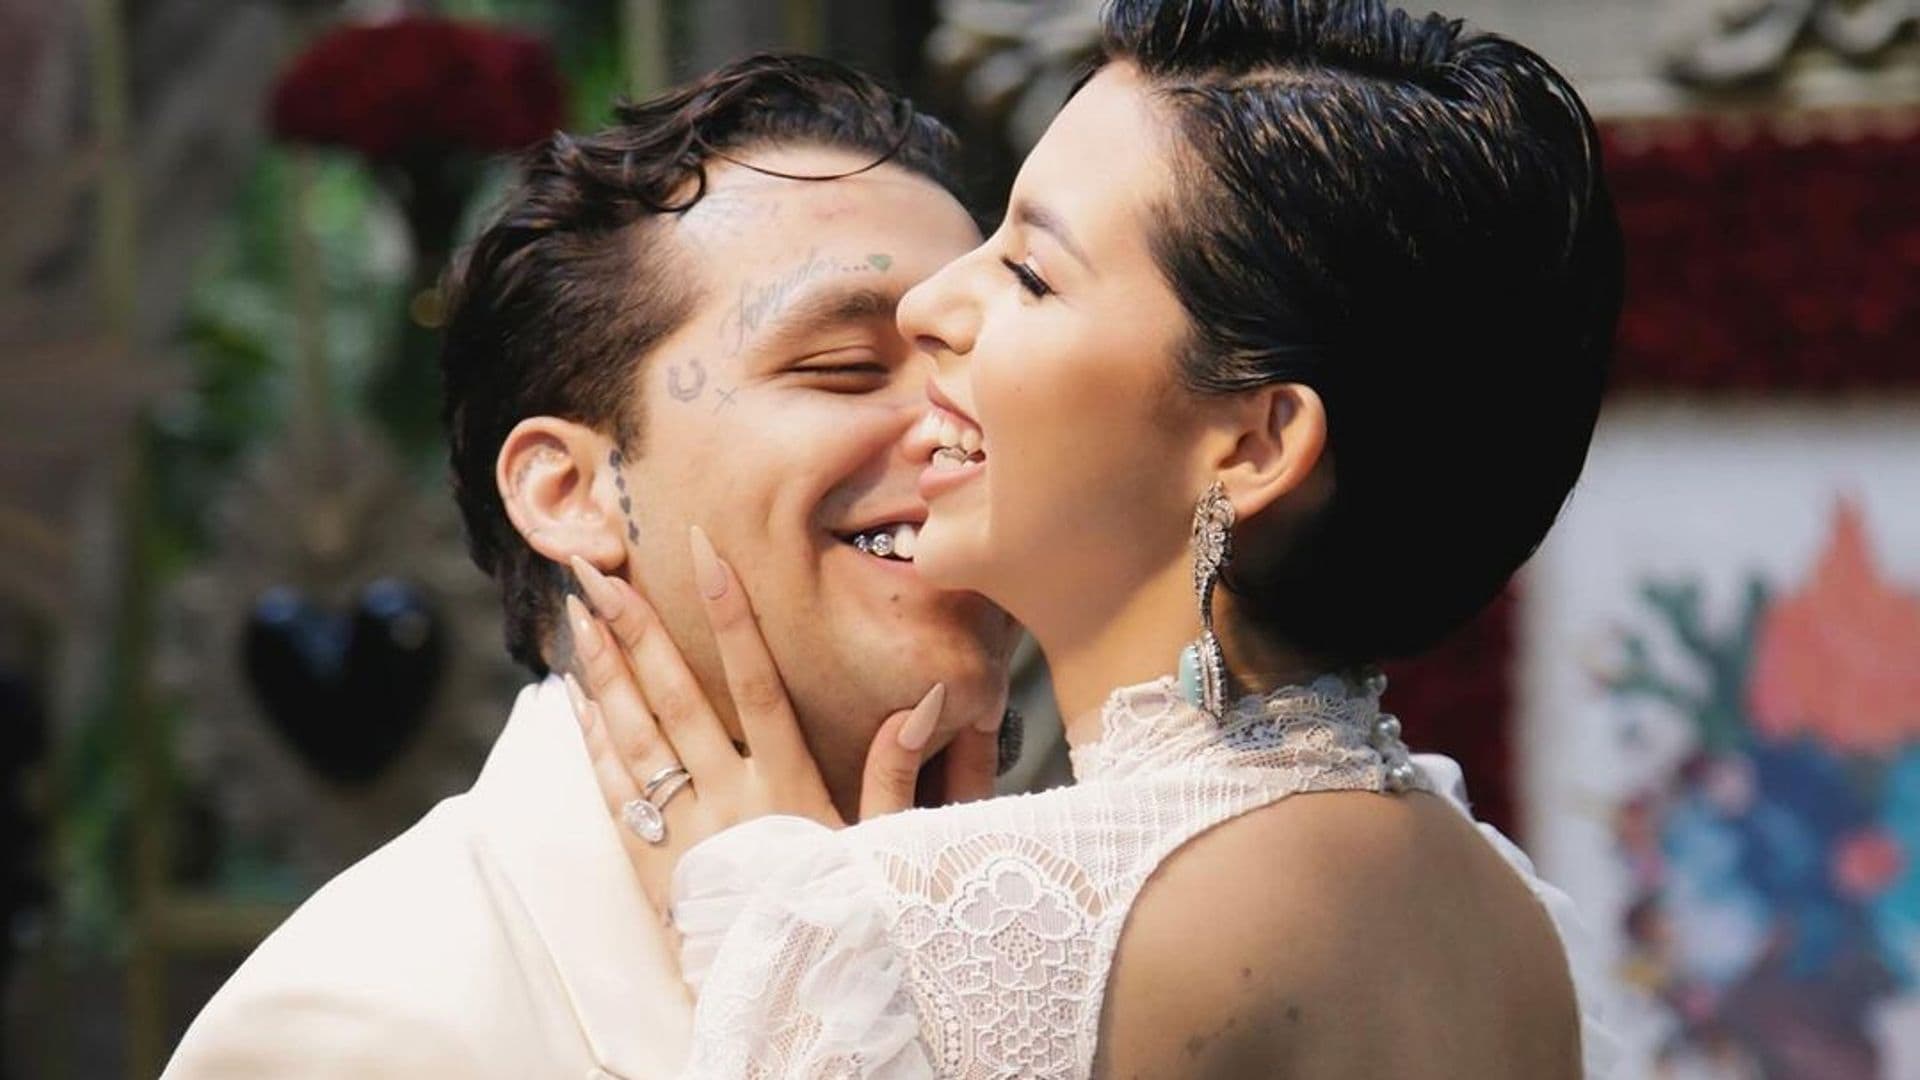 Los cantantes Christian Nodal y Ángela Aguilar se casan por sorpresa dos meses después de confirmar su relación, que nació con polémica